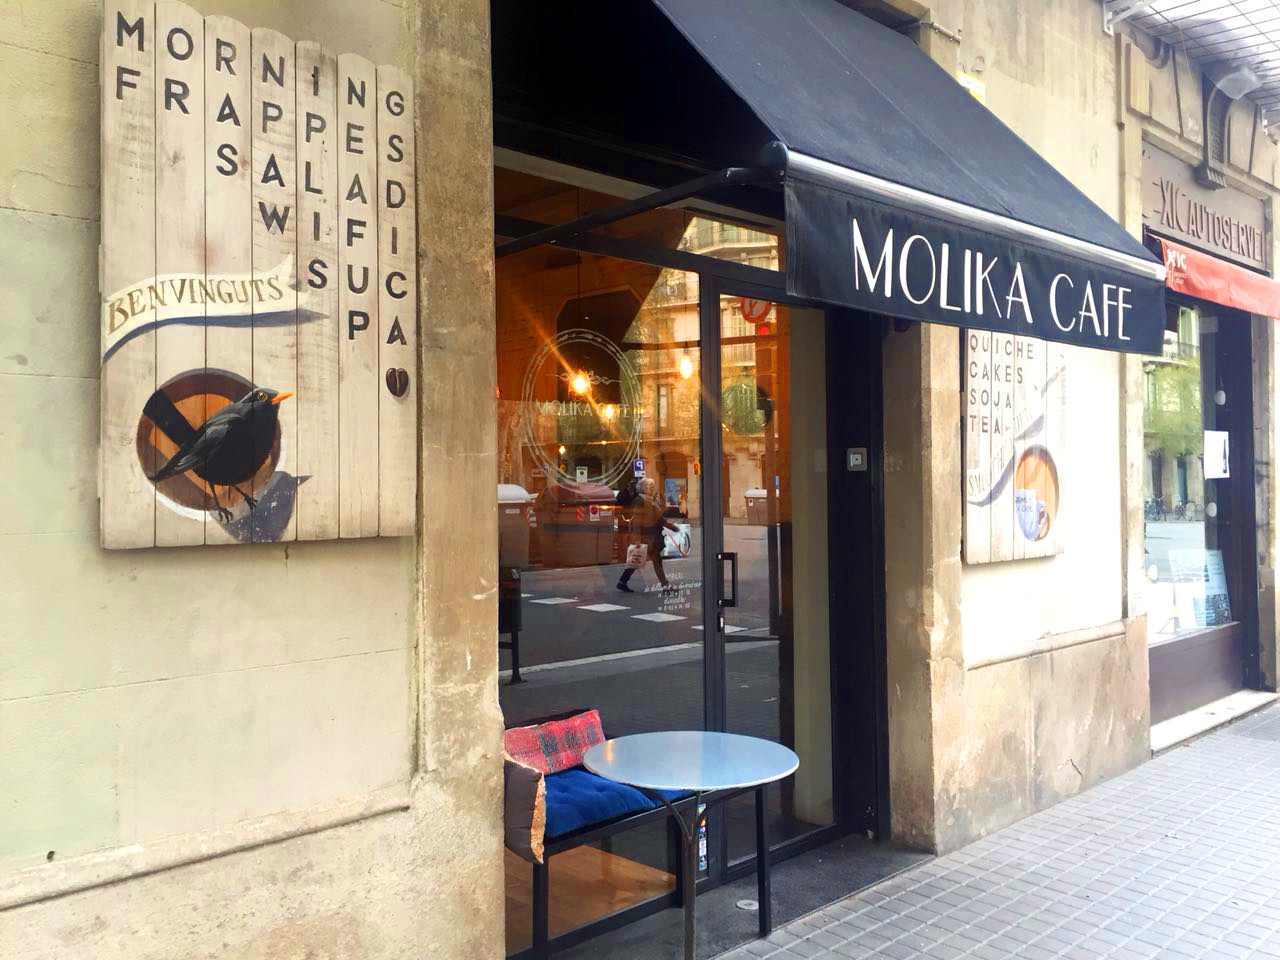 Monika Cafe in Barcelona